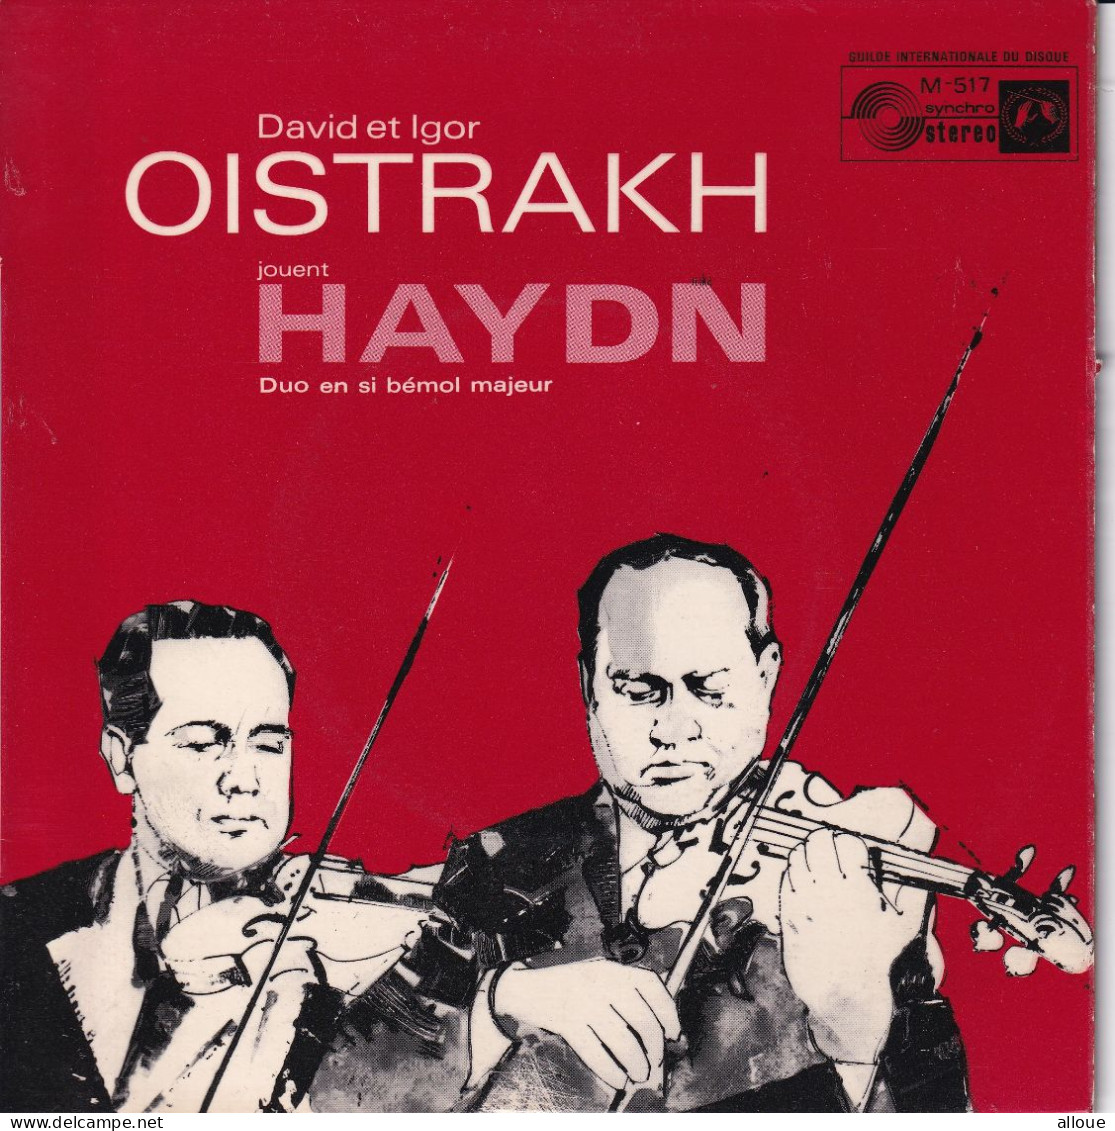 DAVID & IGOR OISTRAKH JOUENT HAYDN - FR EP - DUO POUR DEUX VIOLONS EN SI BEMOL MAJEUR, OP. 99 - Classical